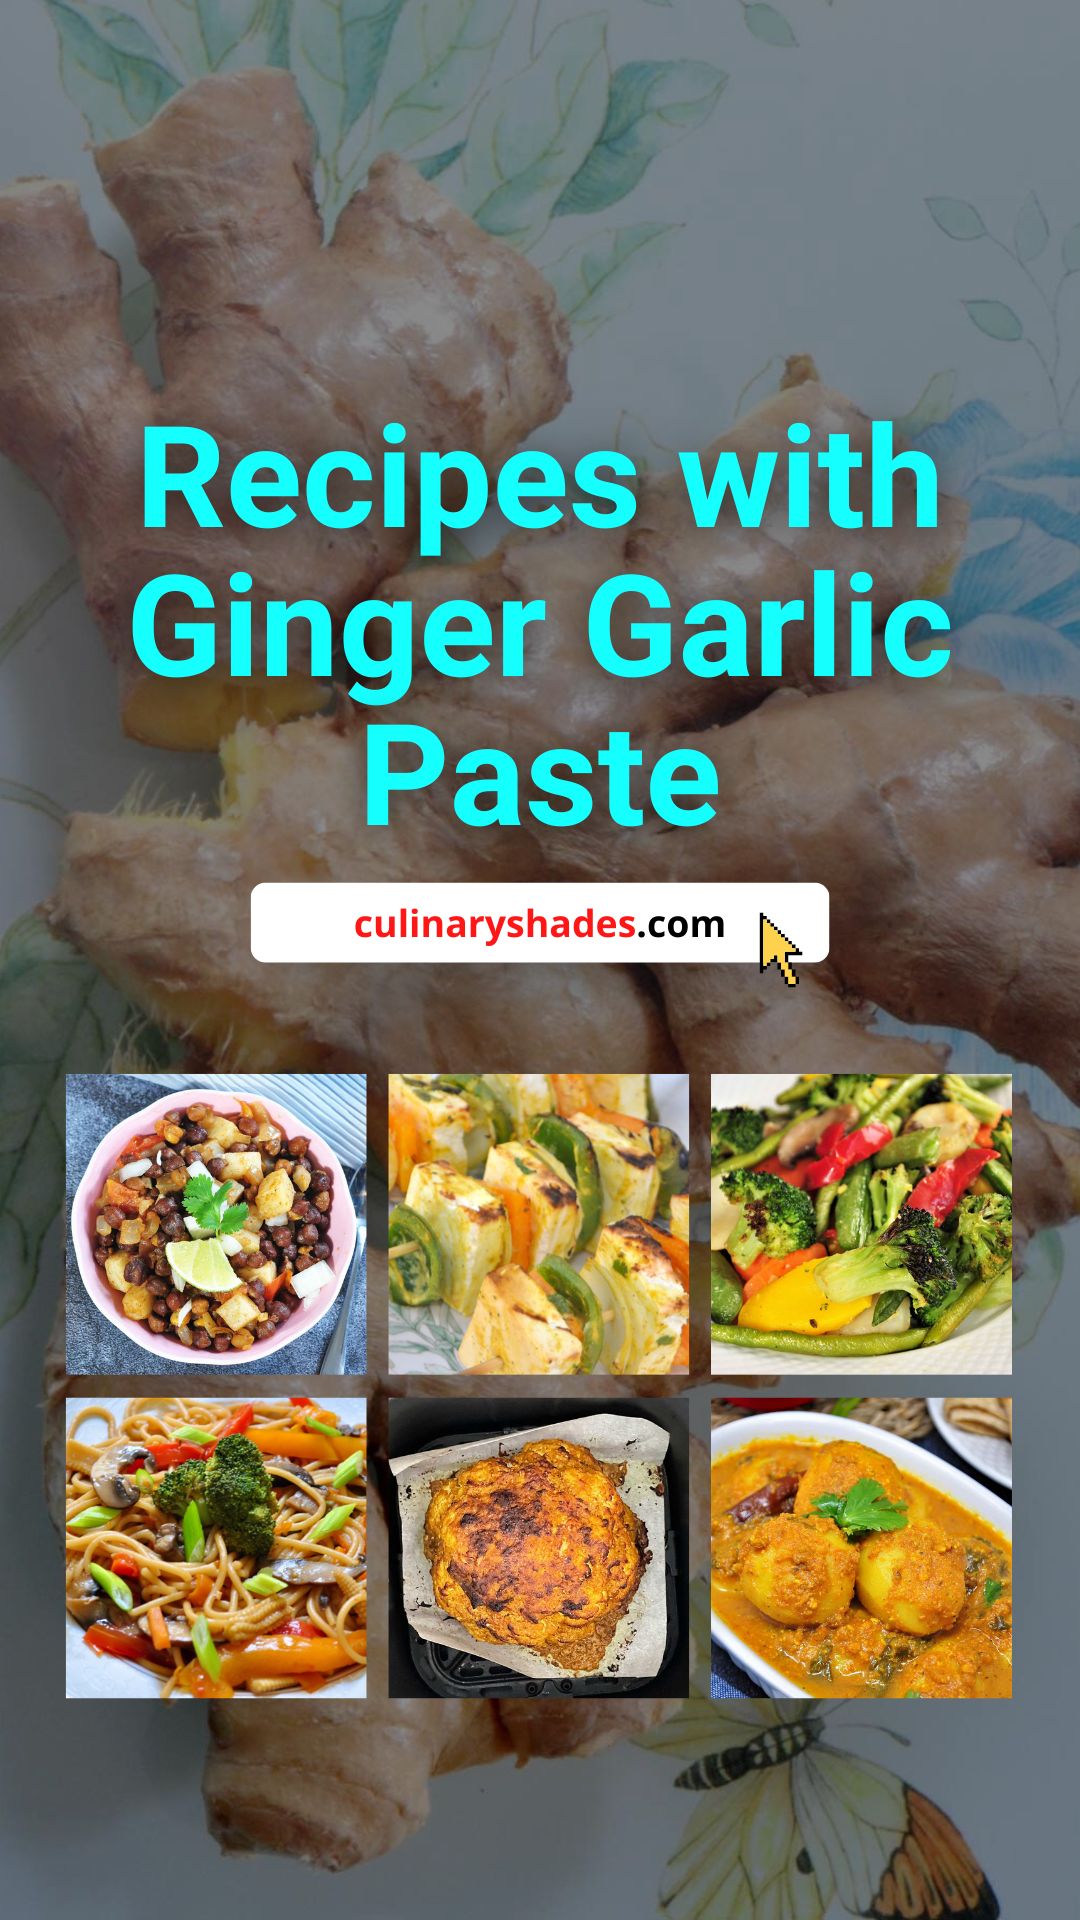 Ginger garlic paste recipes pin.